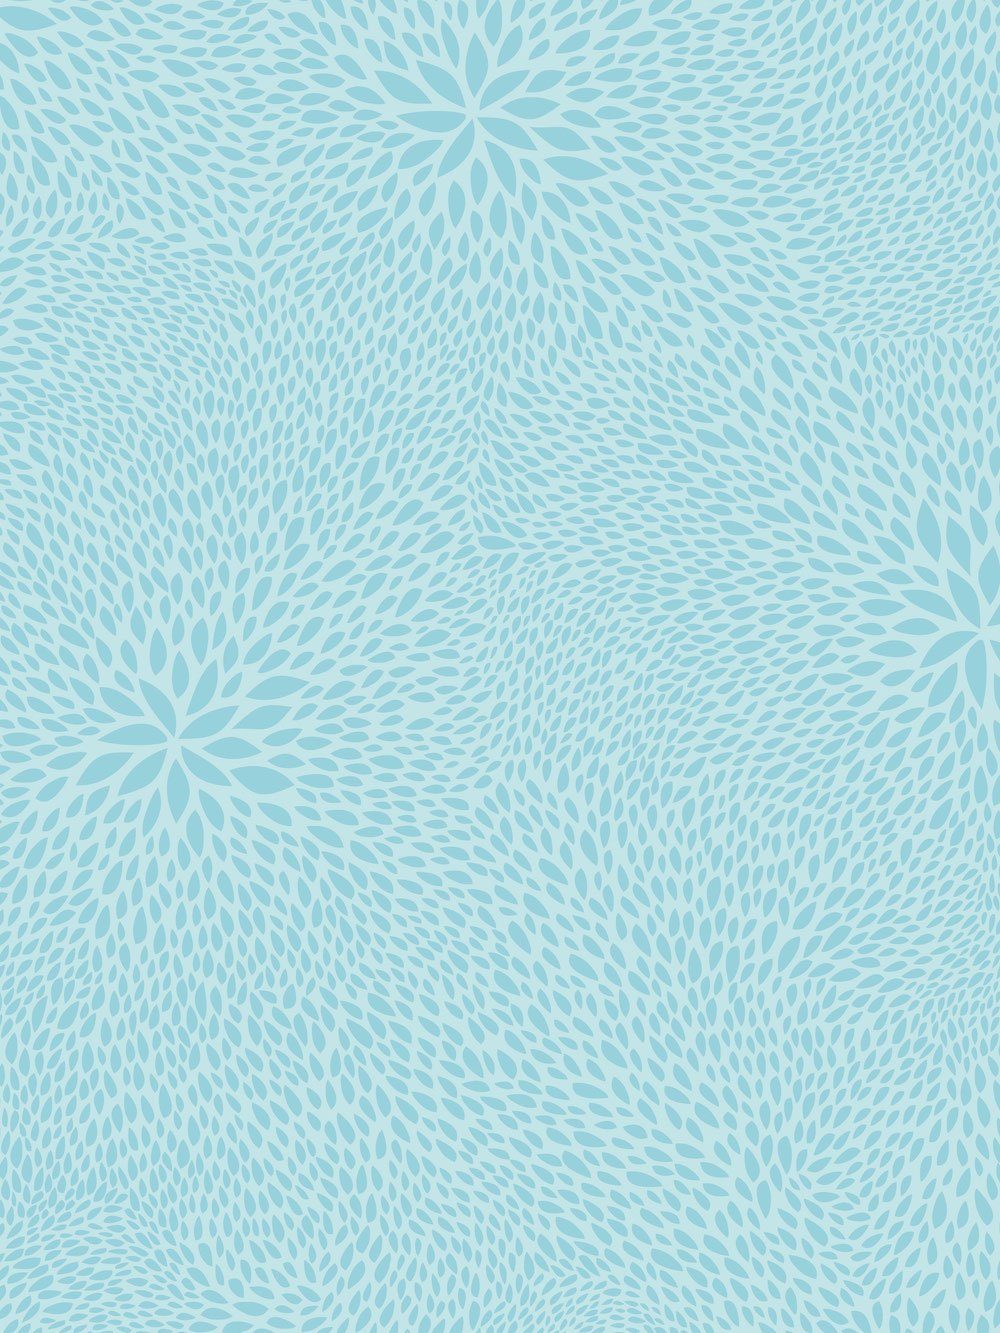 H-Erzmade Zeichenpapier Décopatch-Papier 701 Muster Blütenblätter hellblau | Papier